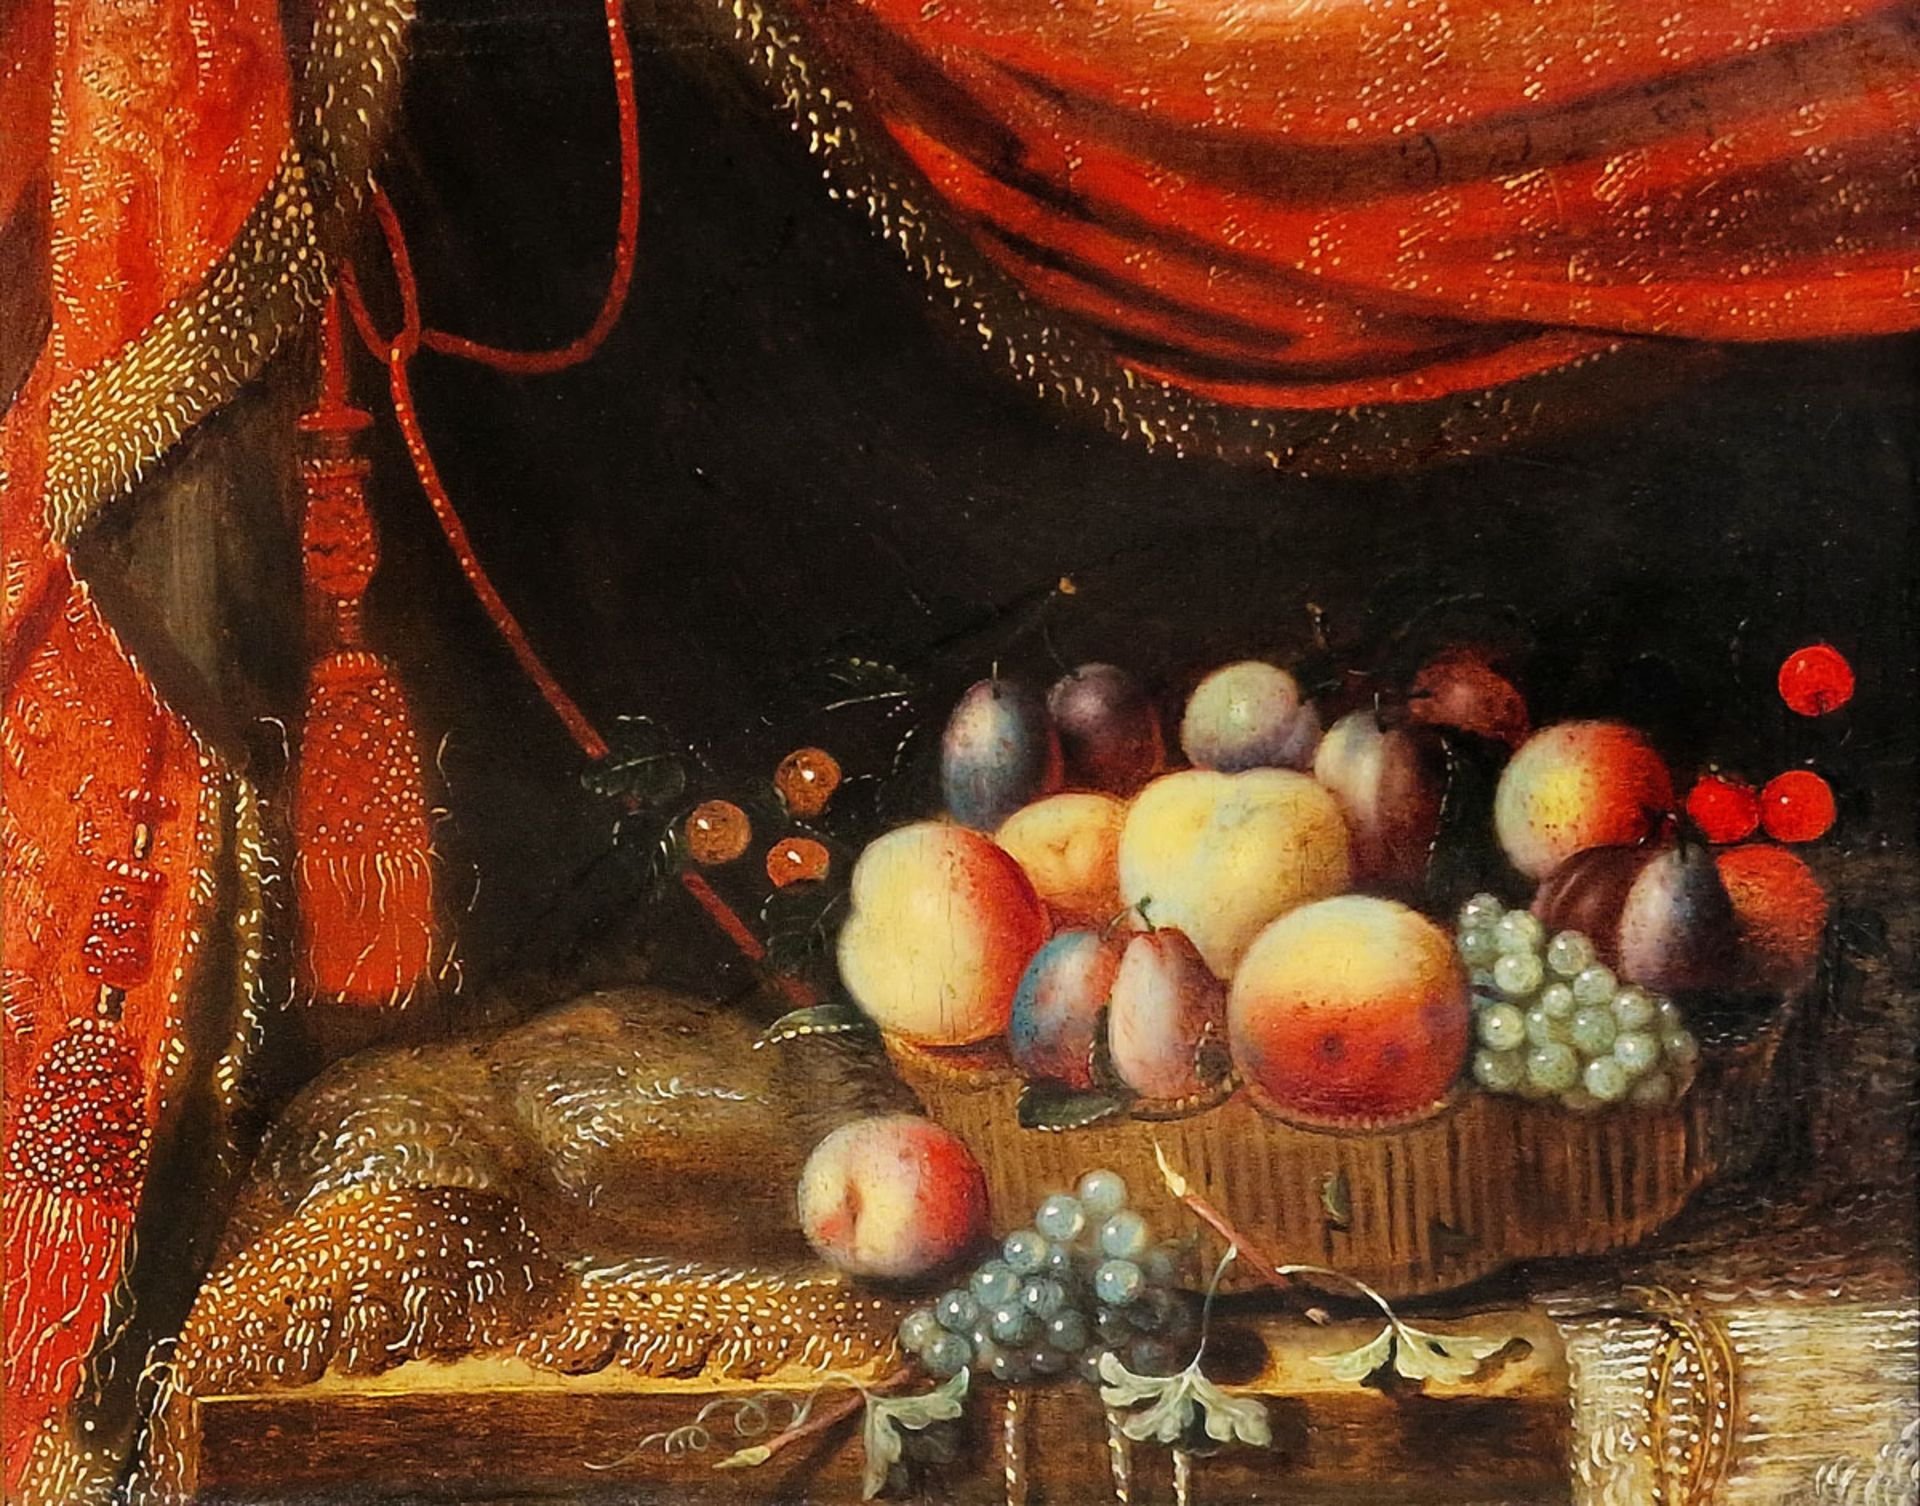 FRANCESCO NOLETTI dit IL MALTESE (c.1610-1654) - Nature morte aux fruits et drapés